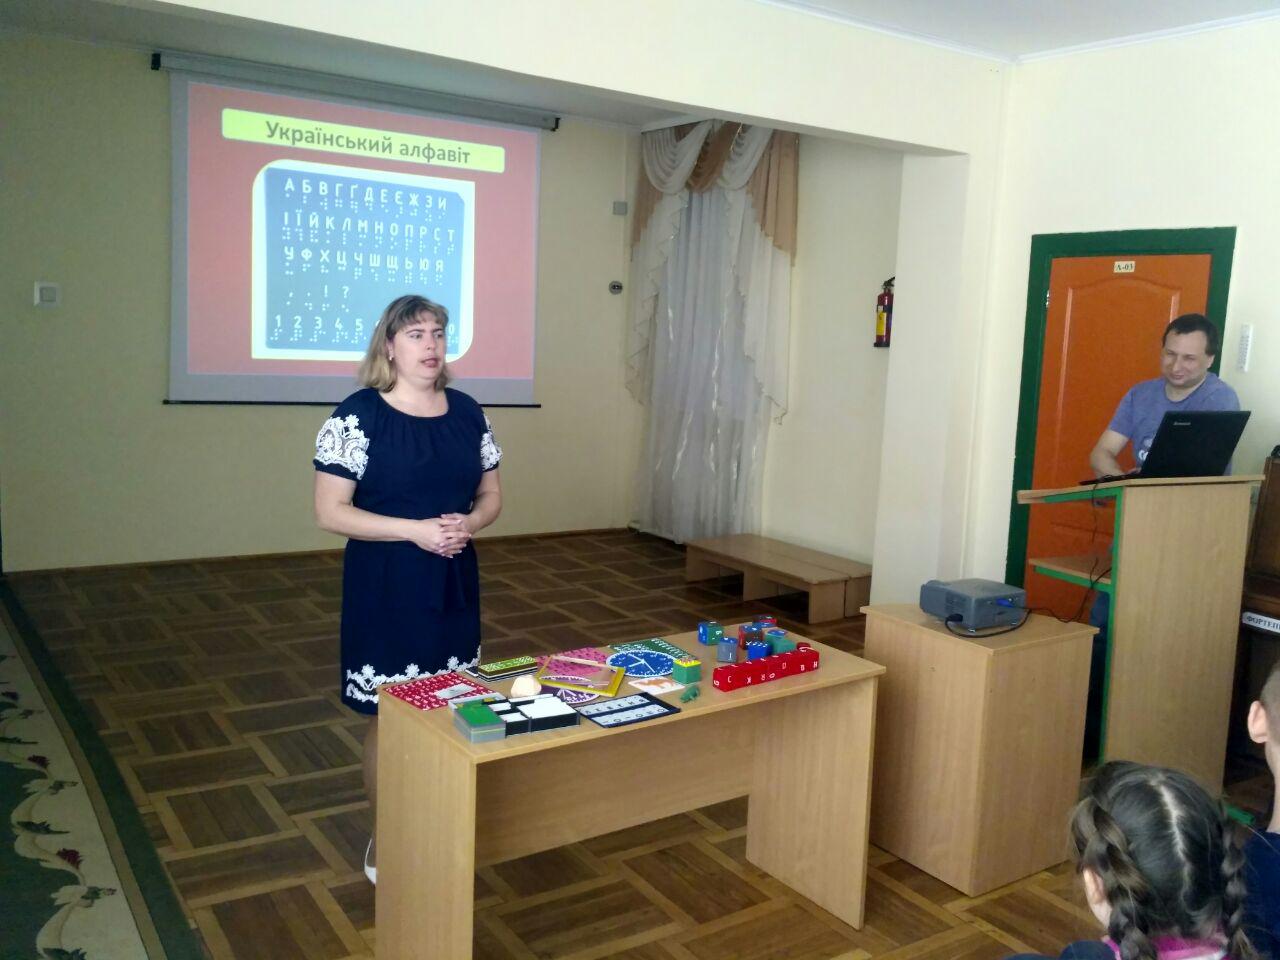 Розпочато проект «3D-друк на допомогу незрячим та слабозорим» за фінансової підтримки Rotary Club Rivne Ukraine та Rotary Club Alliston Canada